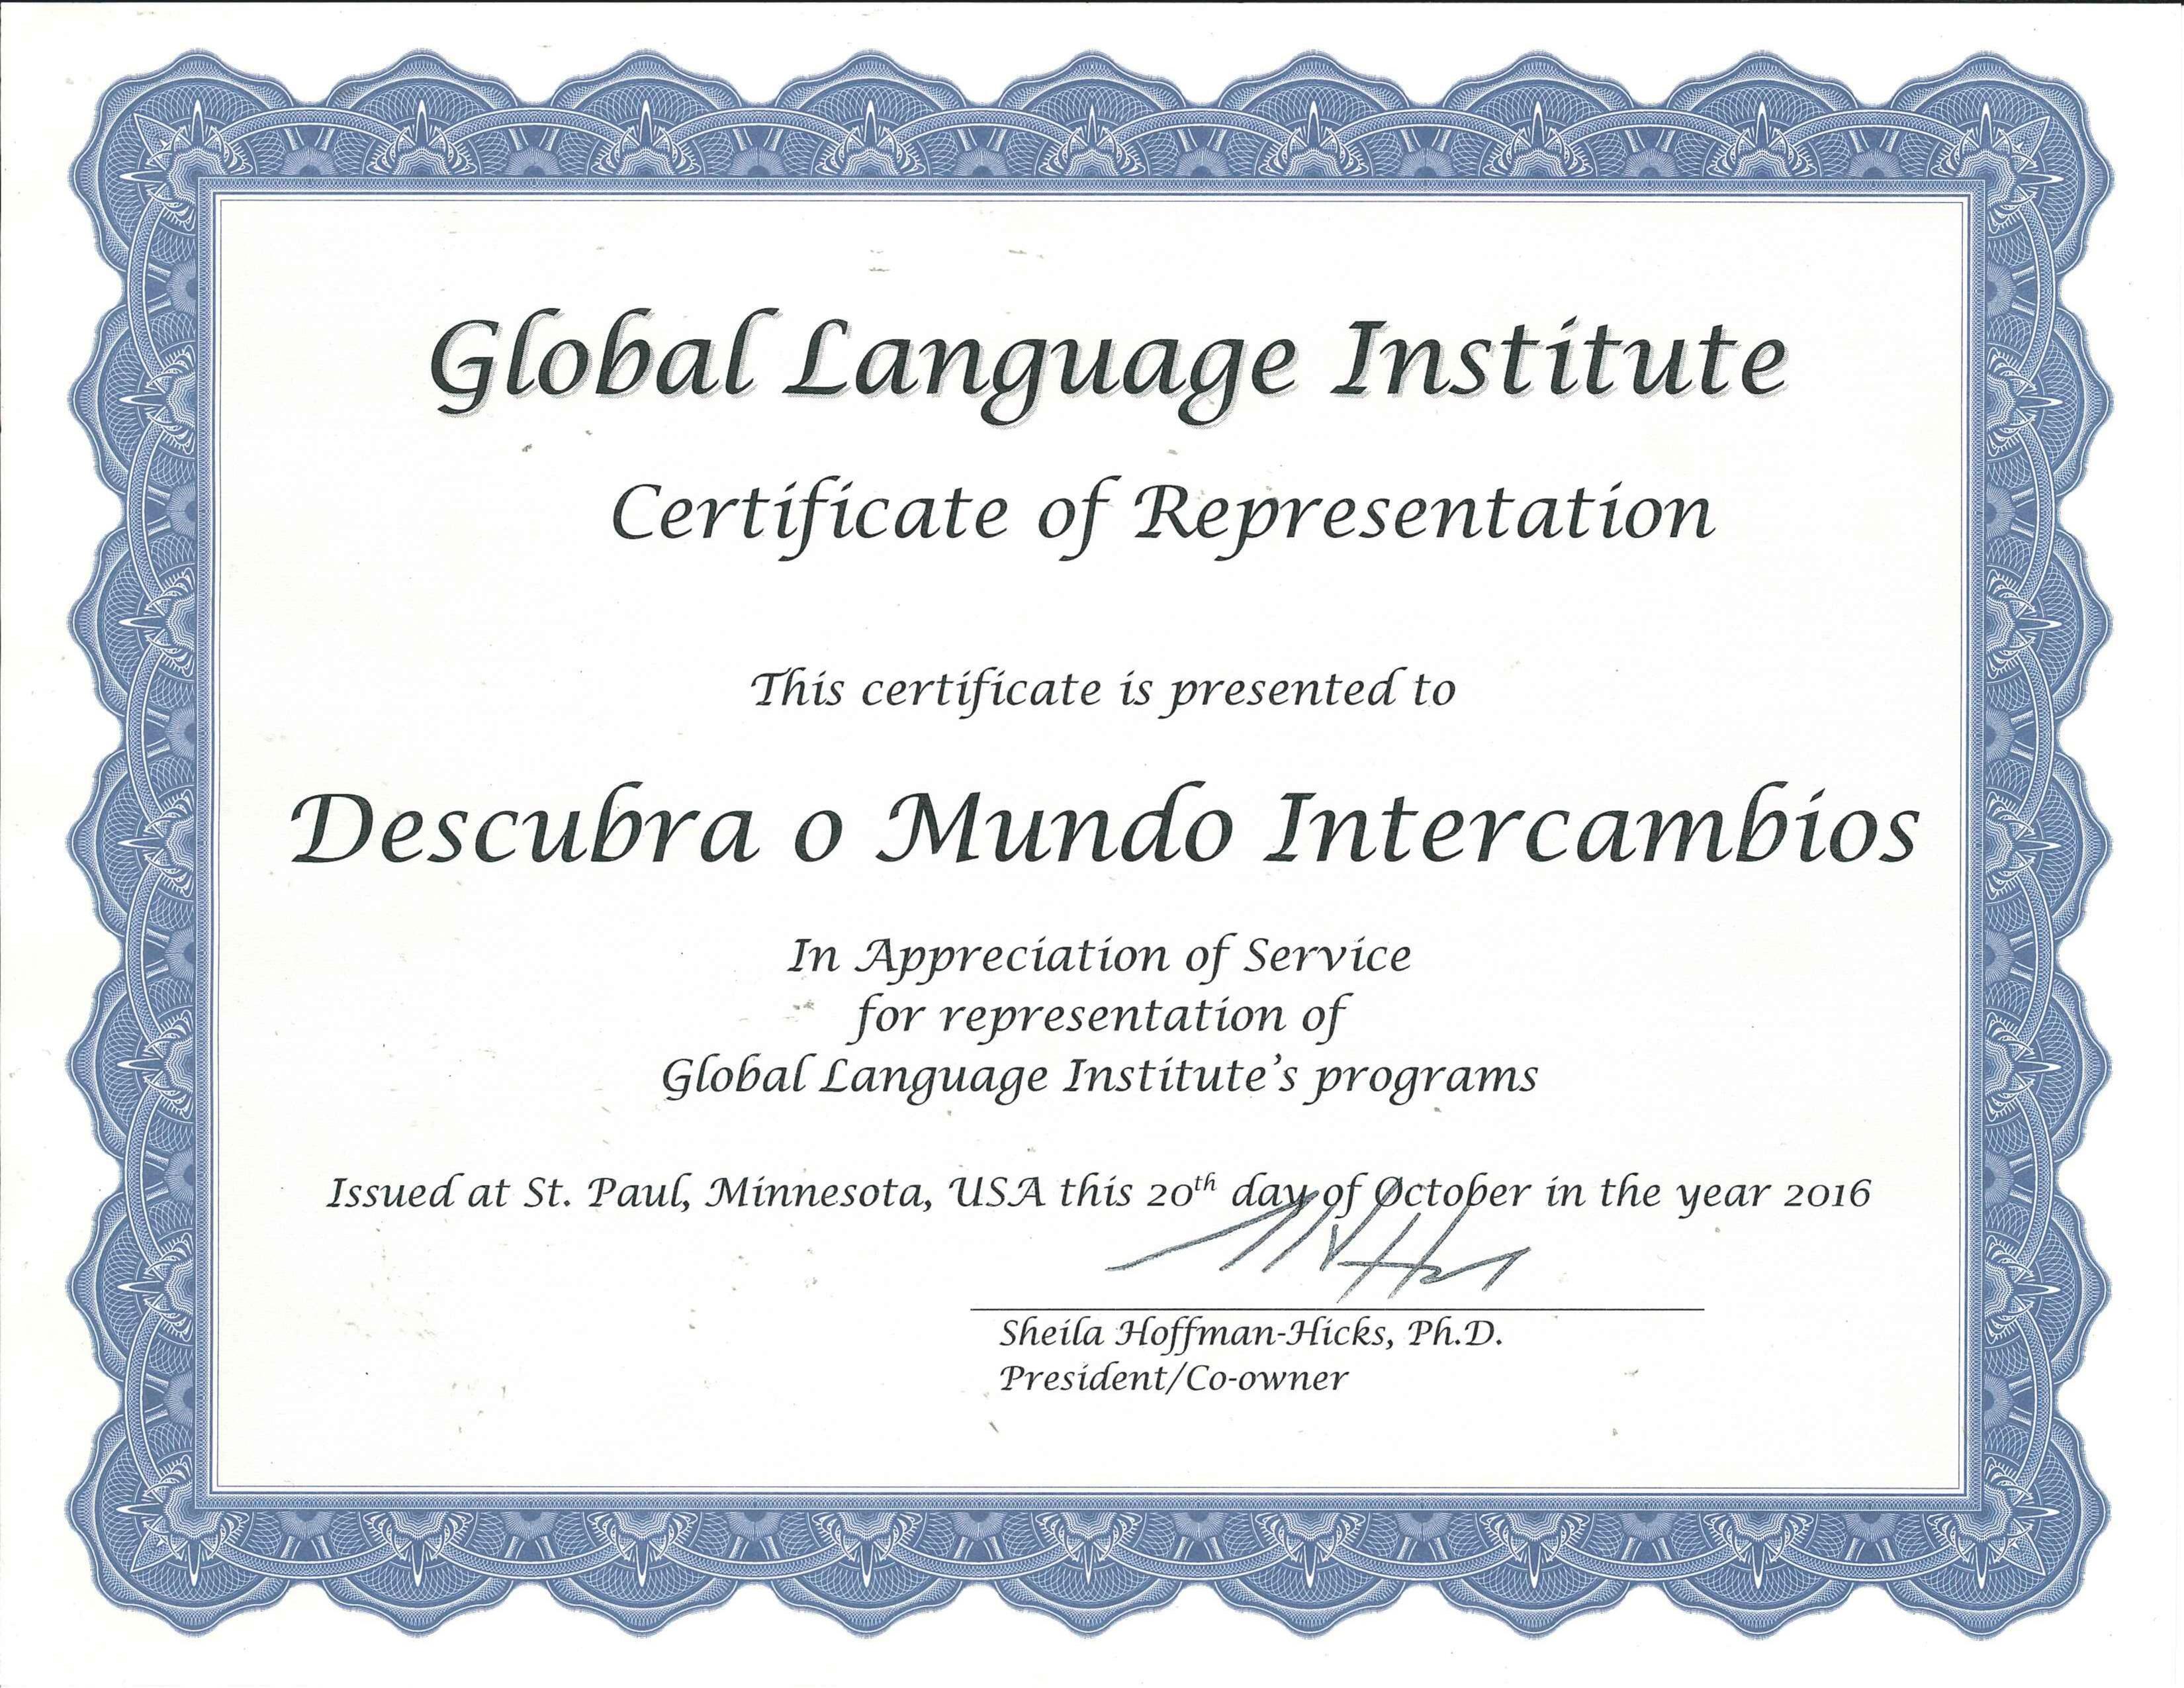 Descubra o Mundo é um agente autorizado da Global Language Institute